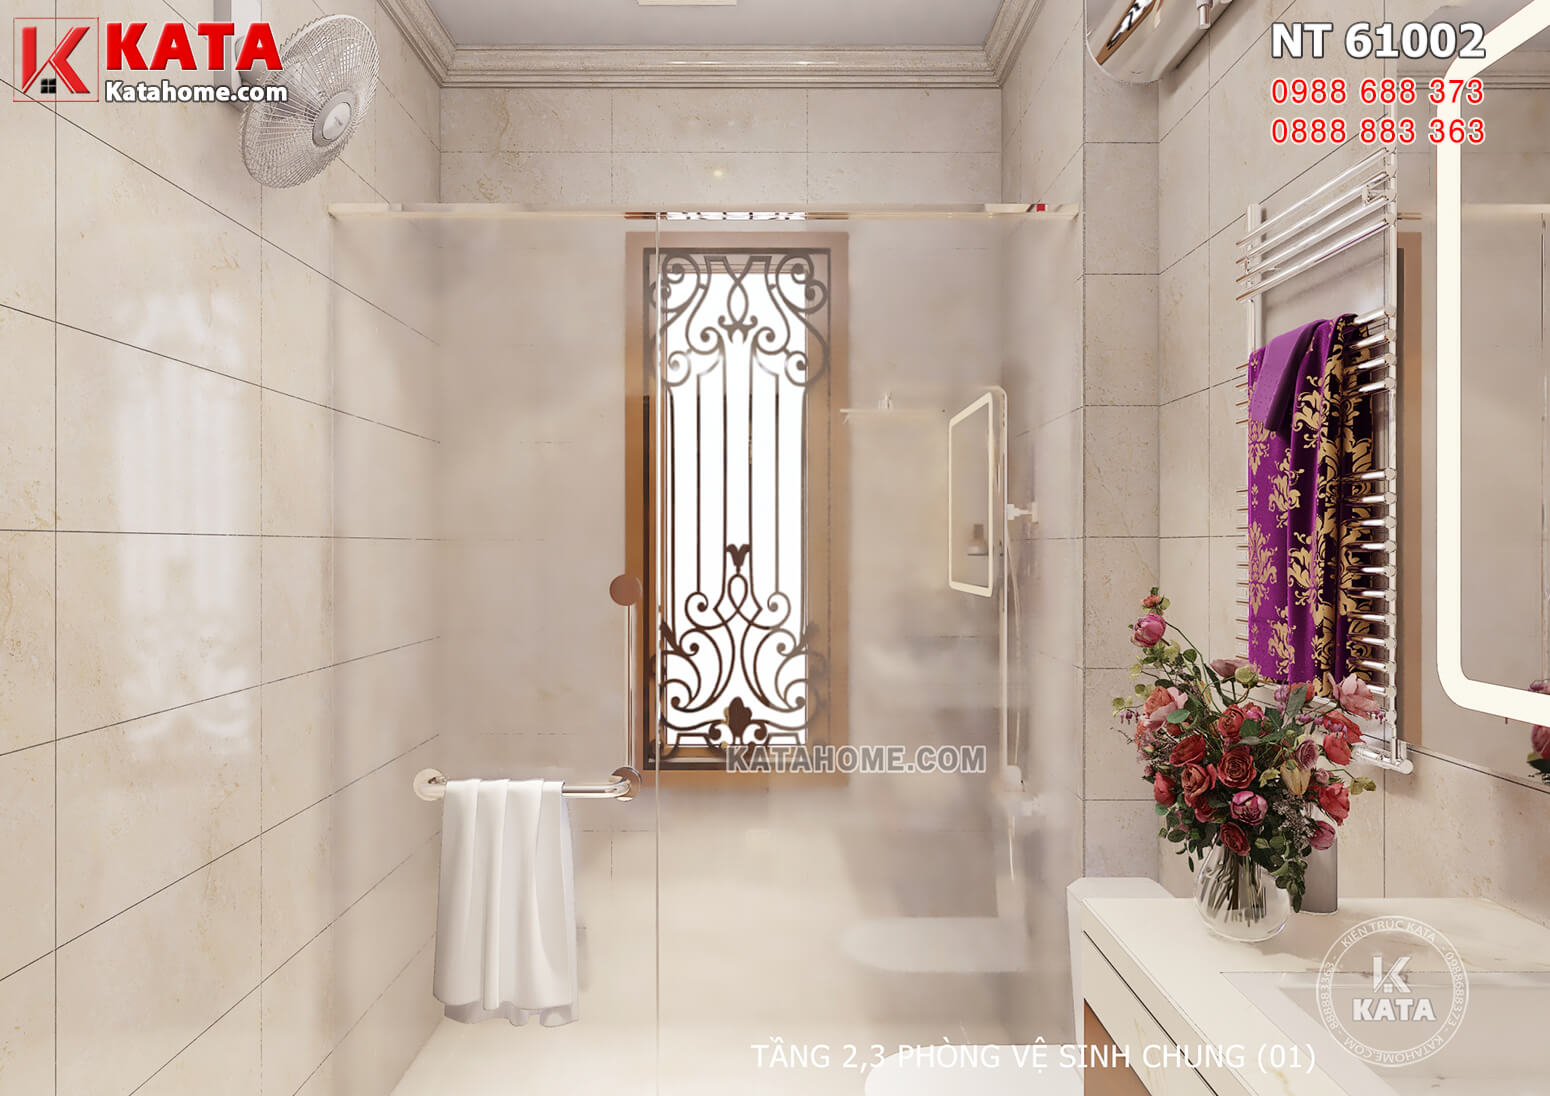 Hình ảnh: Không gian tắm được phân cách bởi tấm vách kính giúp giữ vệ sinh, sạch sẽ